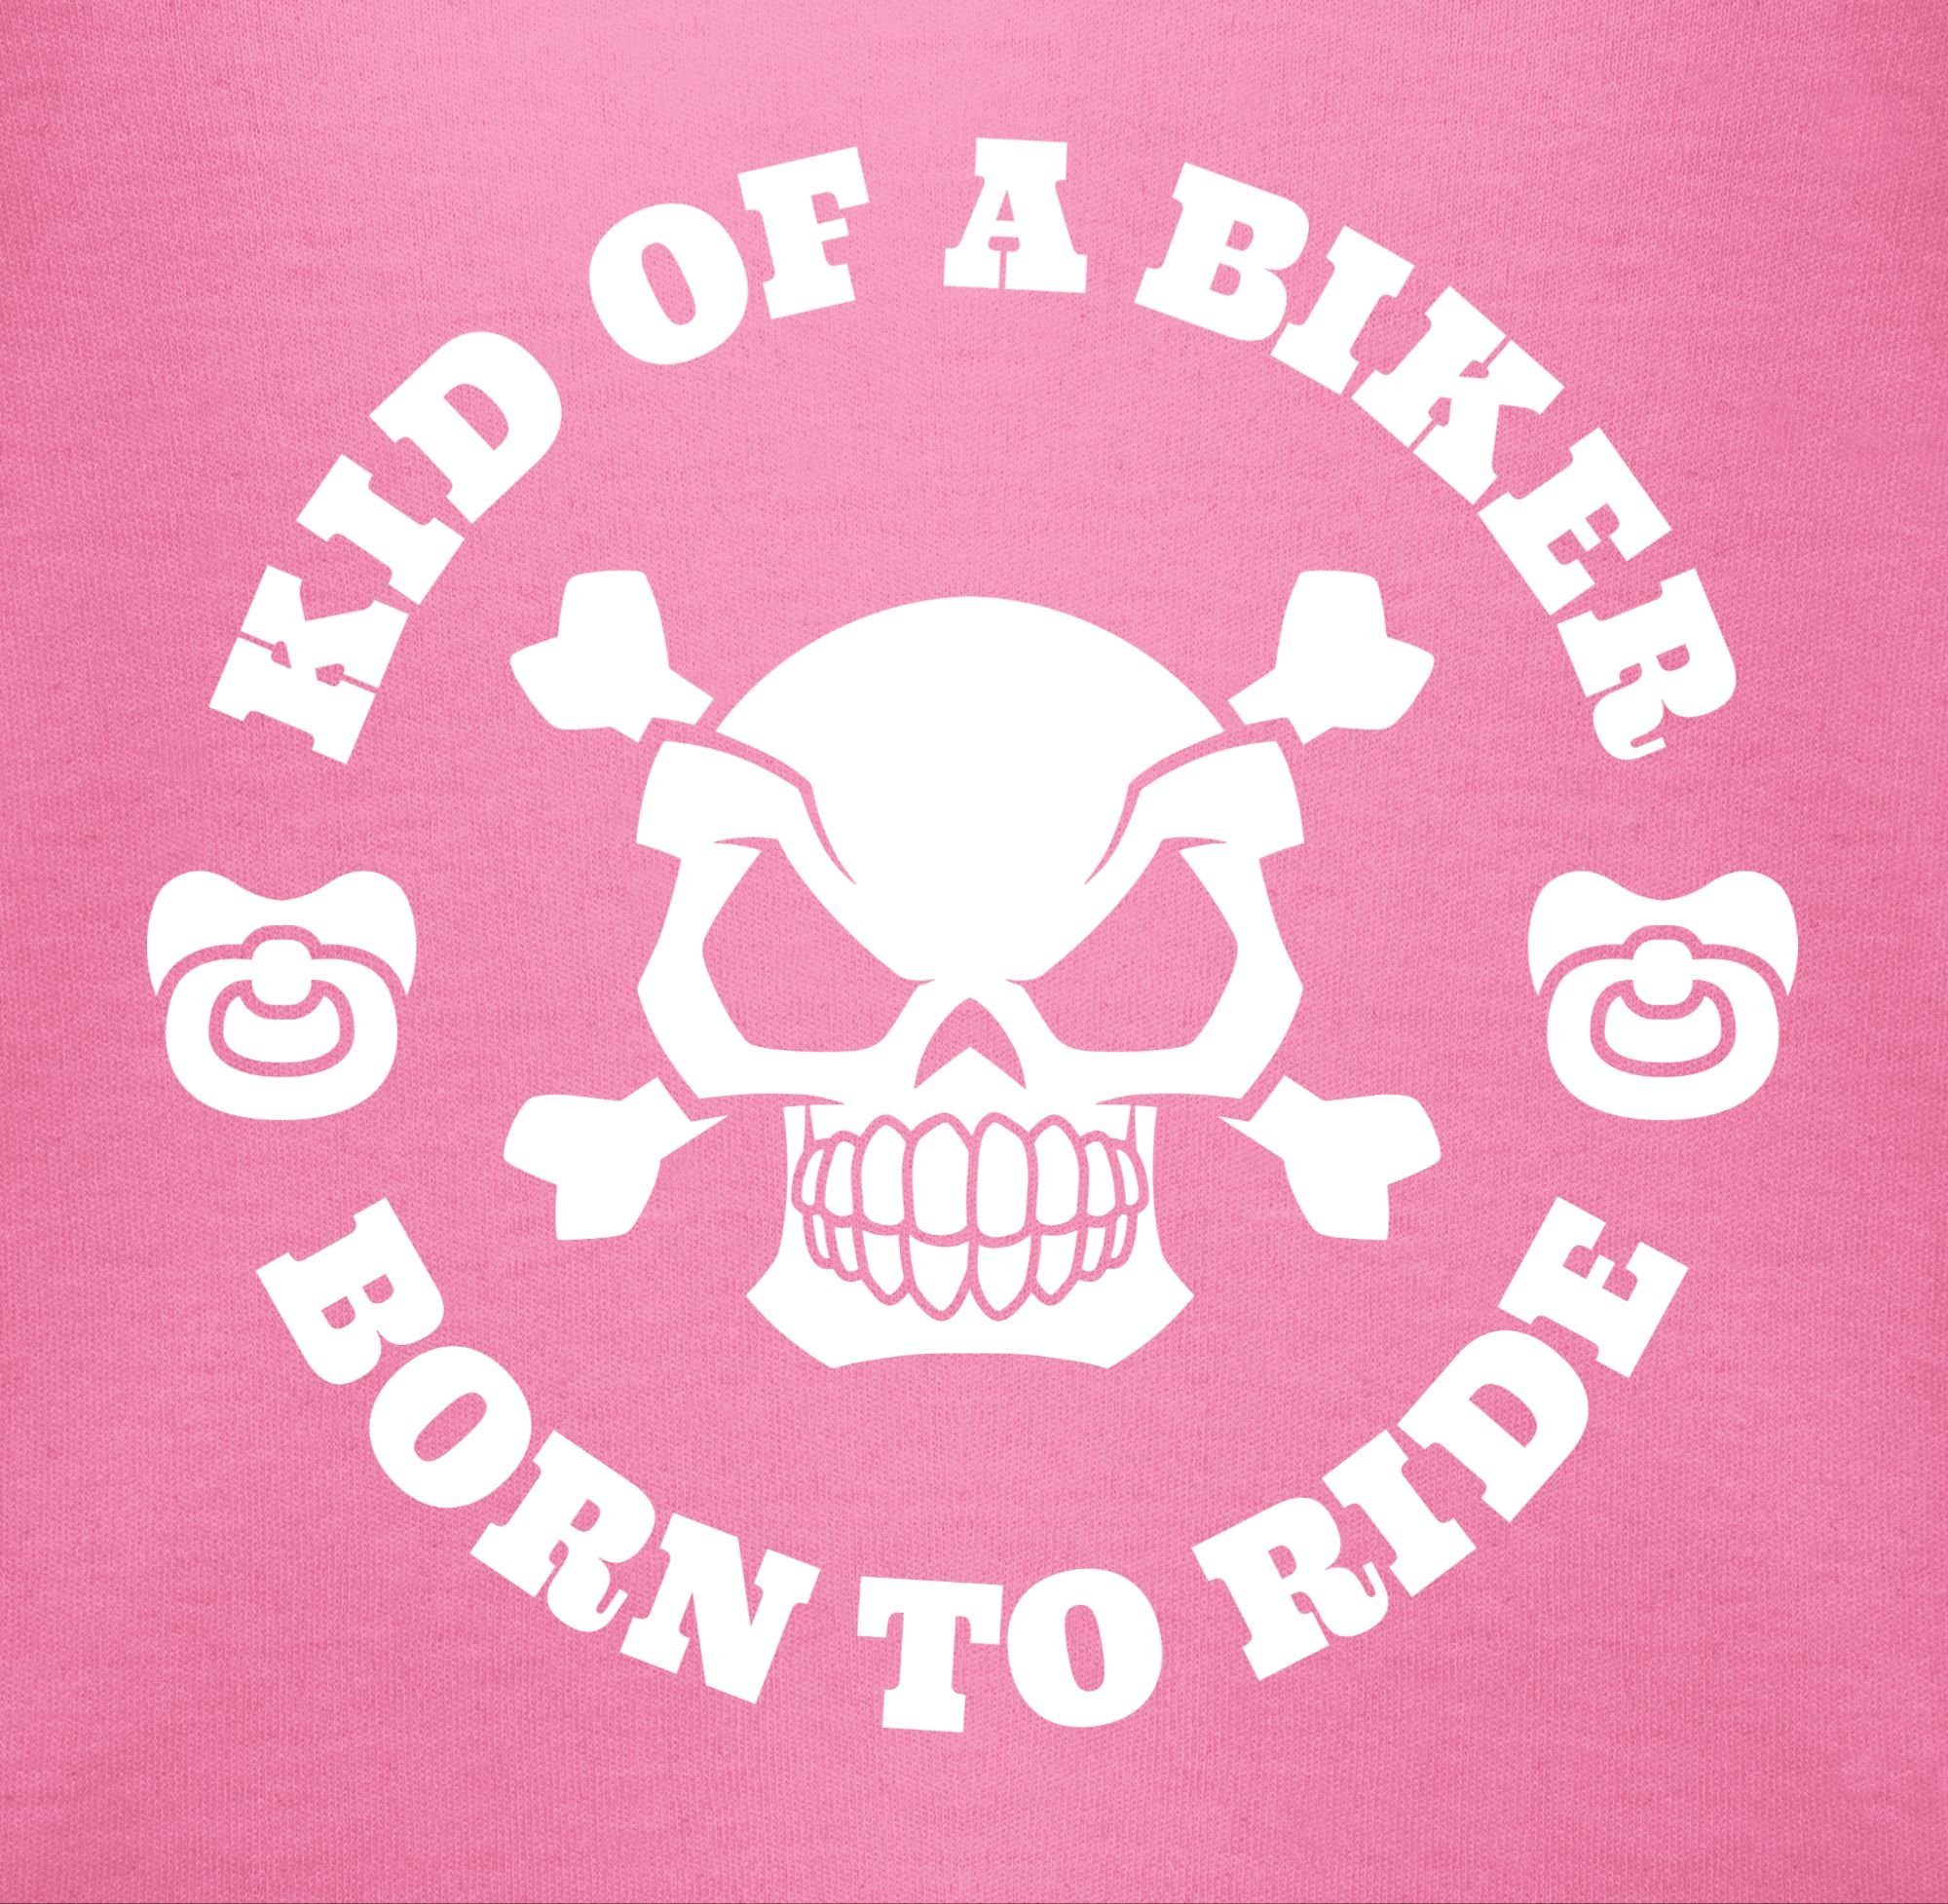 Shirtracer Shirtbody 2 biker born of Kid Sprüche ride a Pink to Baby